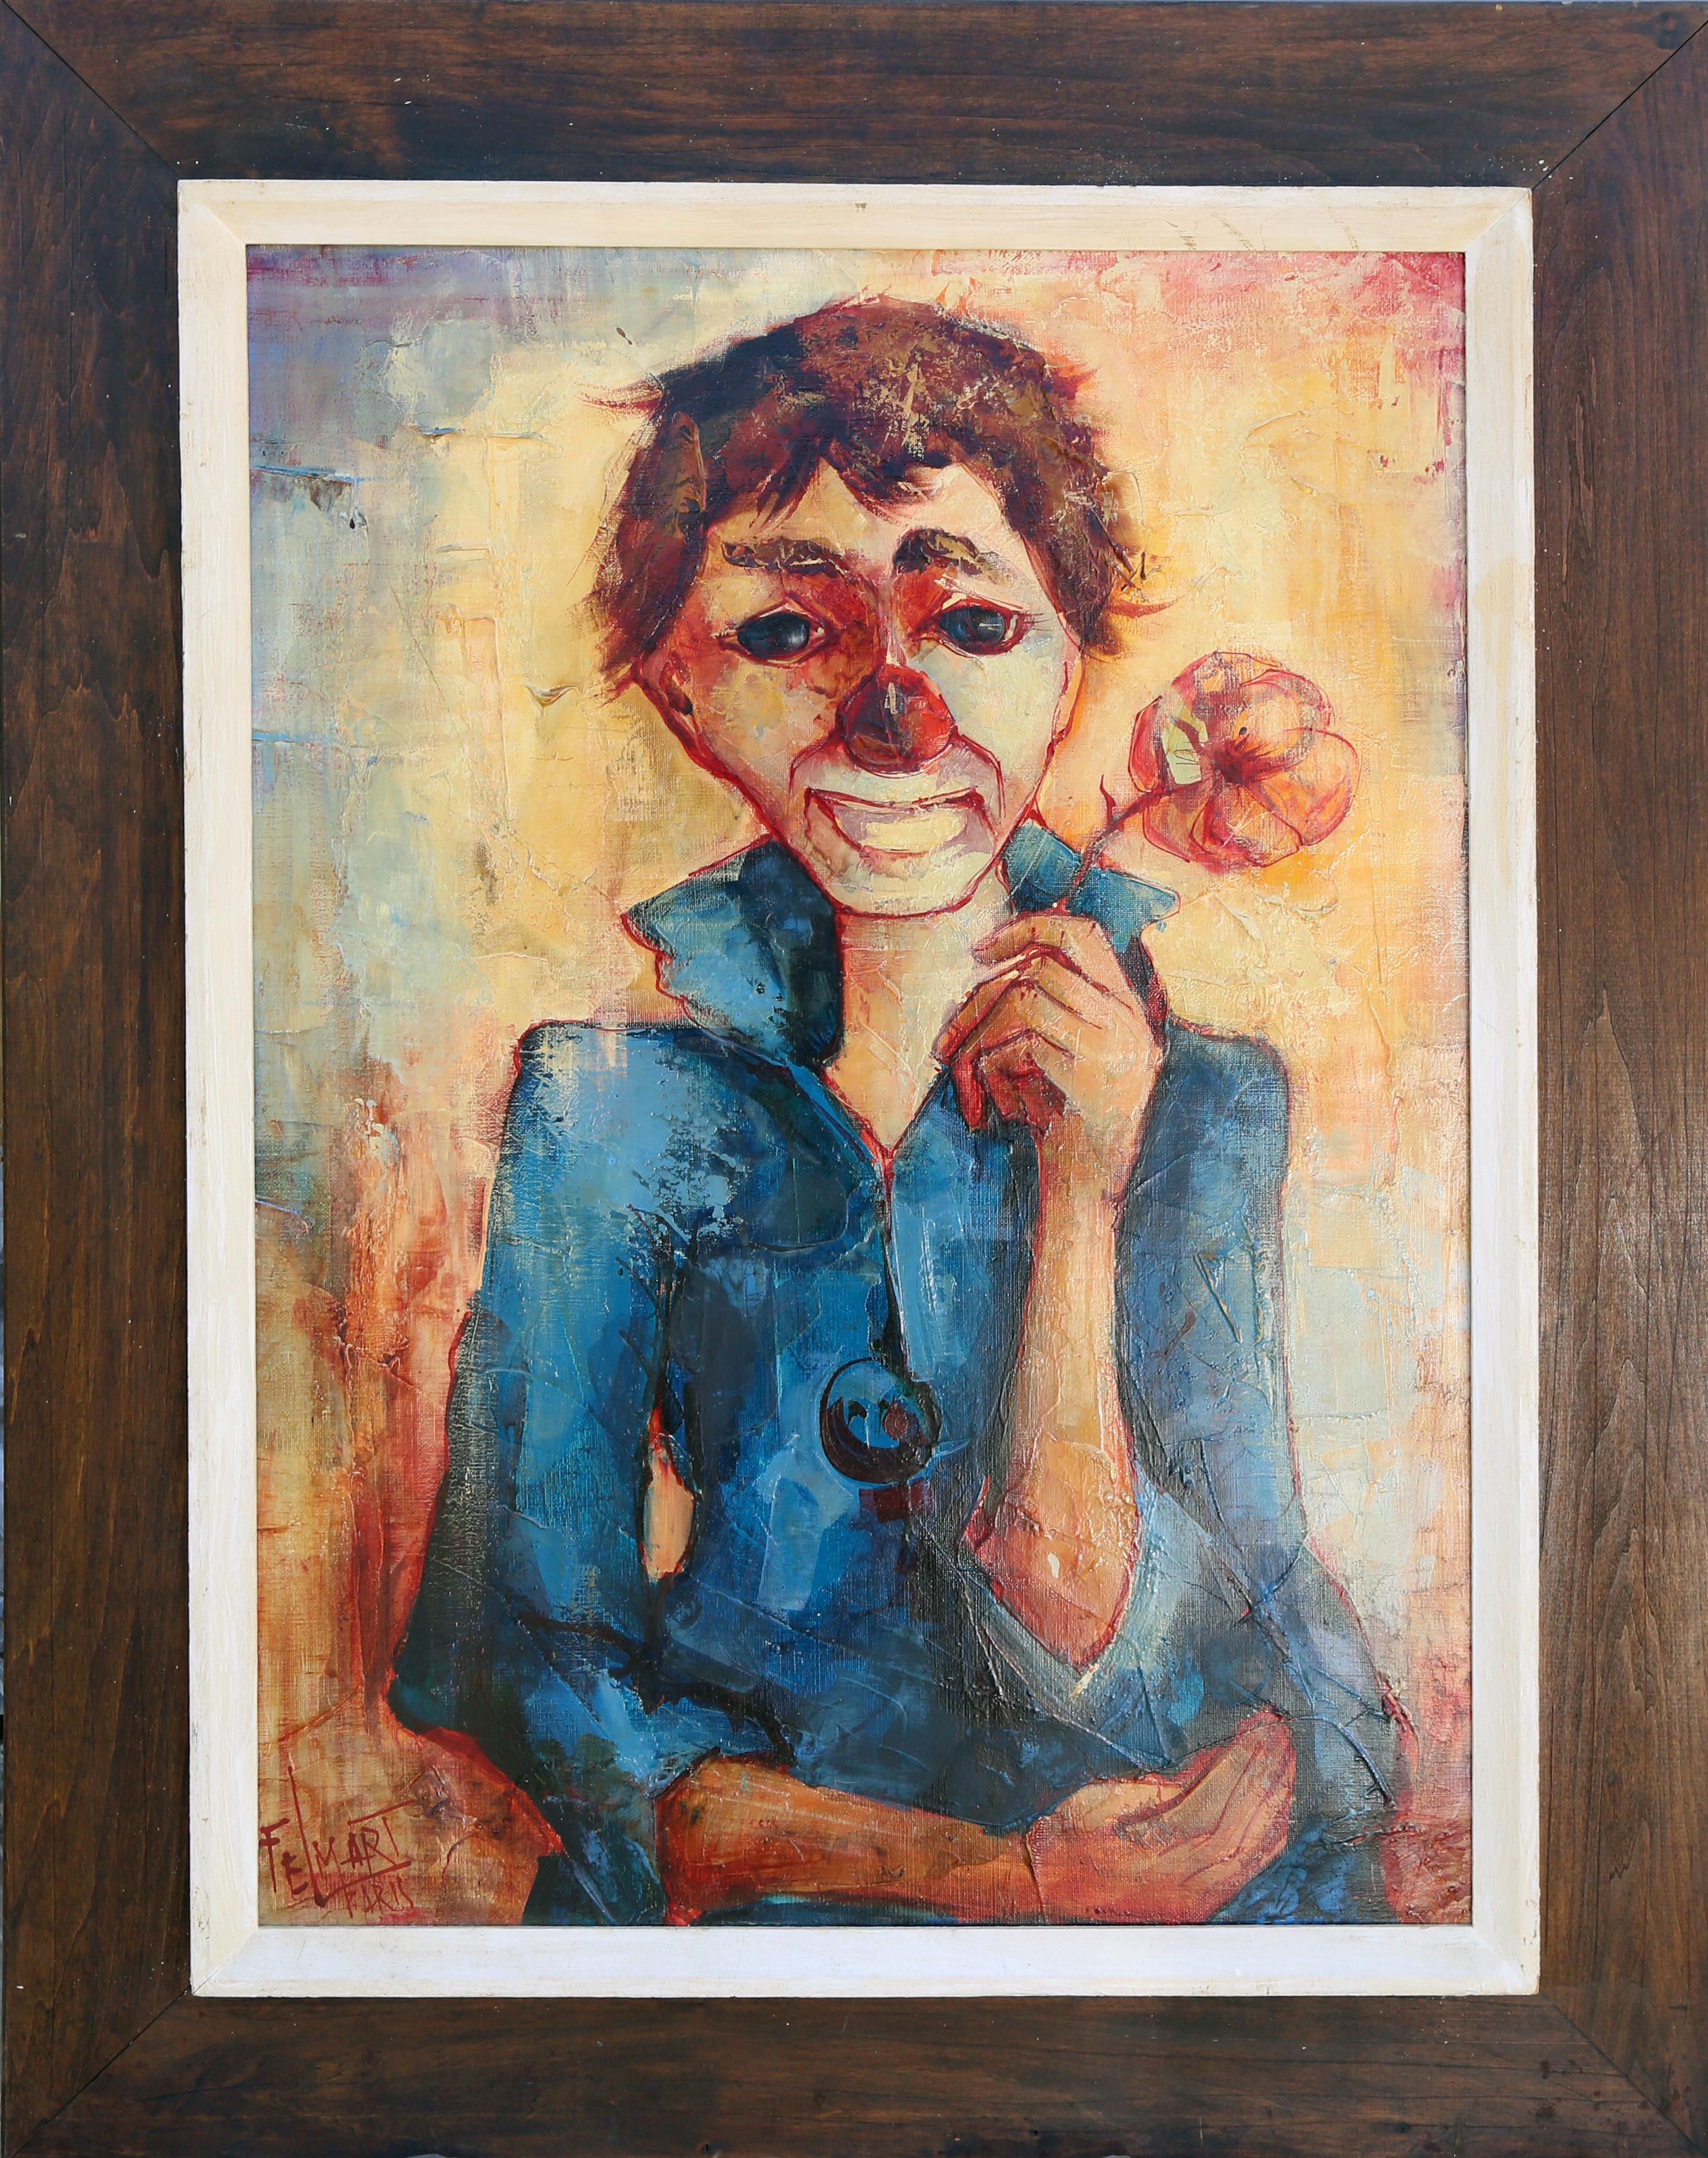 Artistics : Felix Felmart, Espagne XXème
Titre : Le garçon clown de Paris
Année : 1964
Moyen d'expression : Huile sur toile, signée l.l.
Taille : 28 x 20 in. (71.12 x 50.8 cm)
Taille du cadre : 36 x 28 pouces